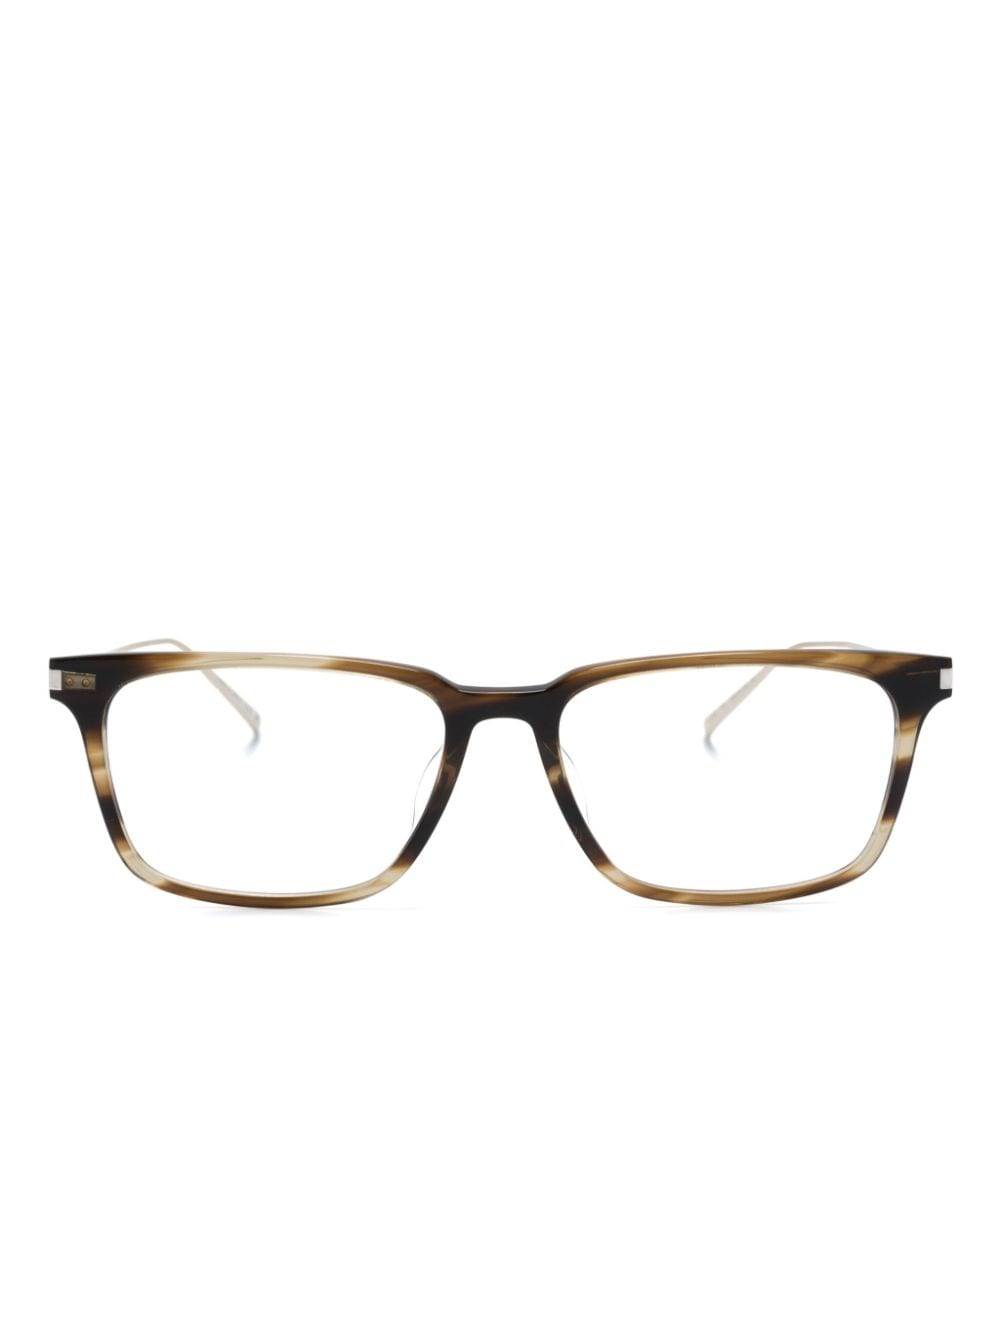 Saint Laurent Tortoiseshell Square-frame Glasses In Gold